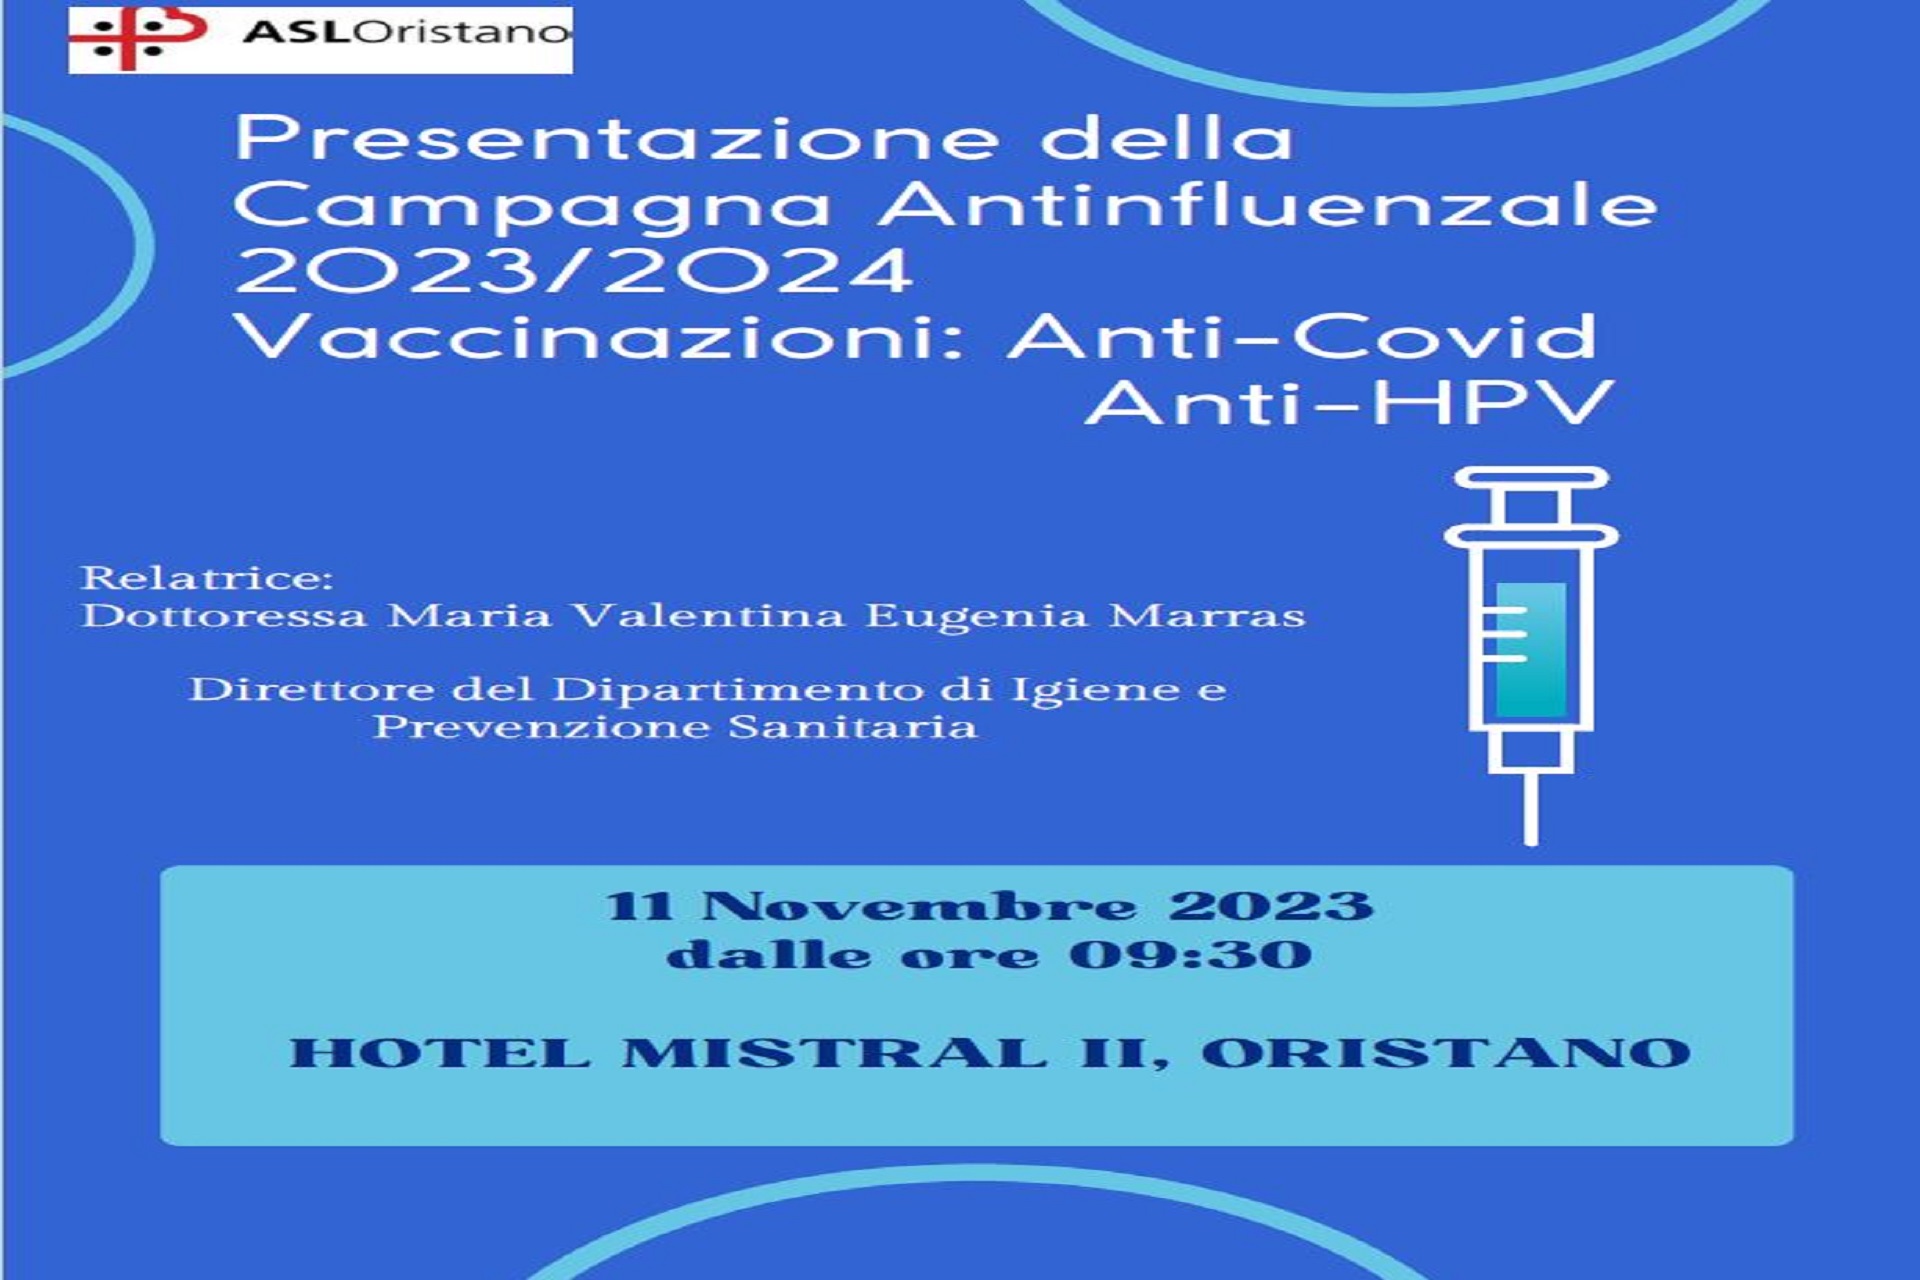 Domani 11 novembre il convegno sulla nuova campagna vaccinale